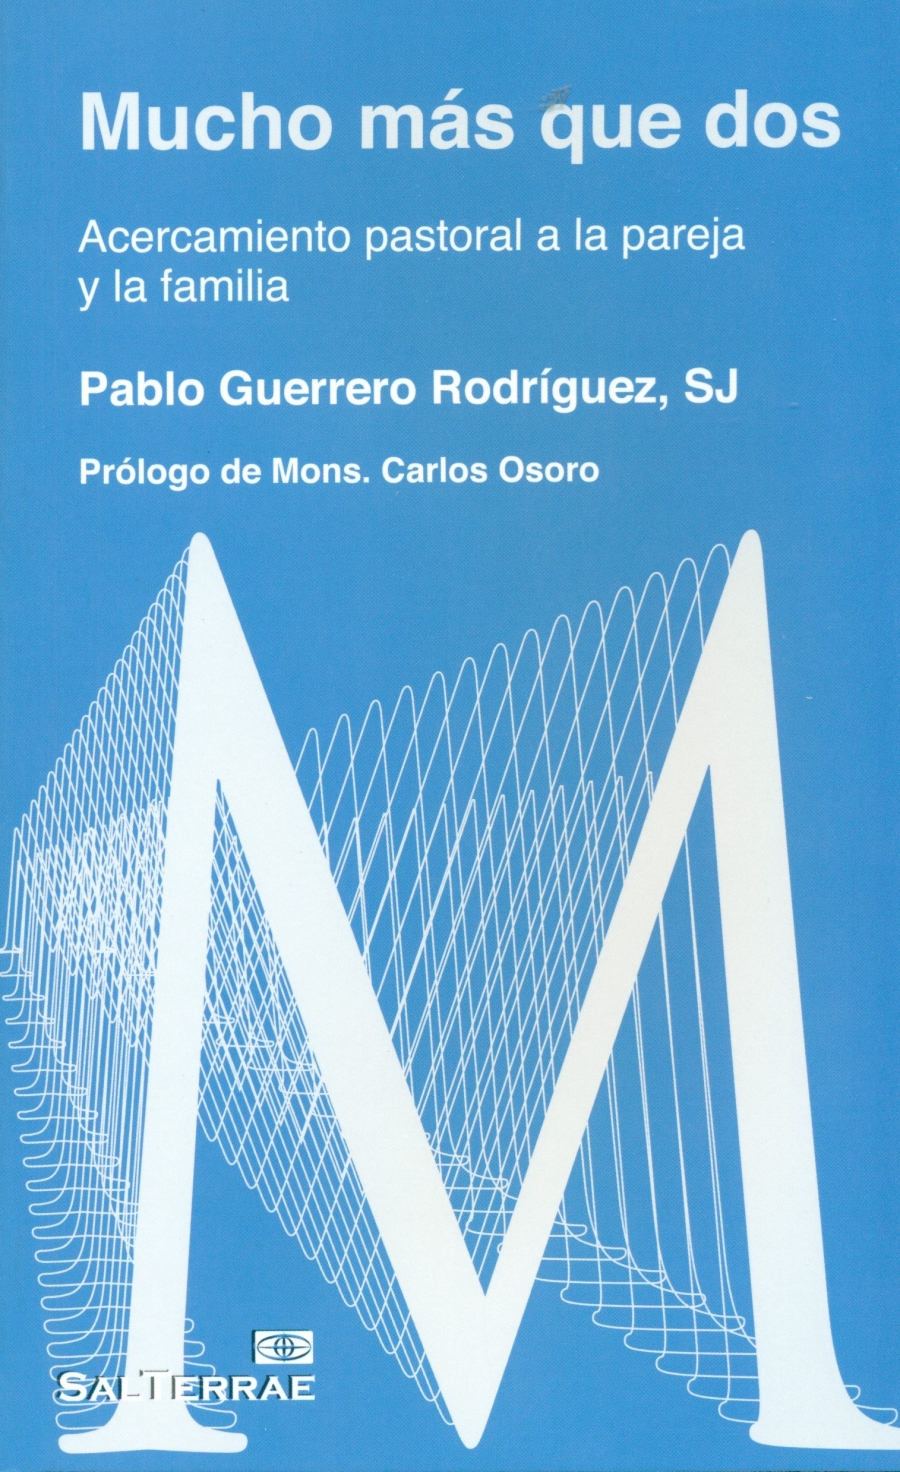 El cardenal Osoro presenta &#039;Mucho más que dos&#039; junto a su autor, Pablo Guerrero, SJ